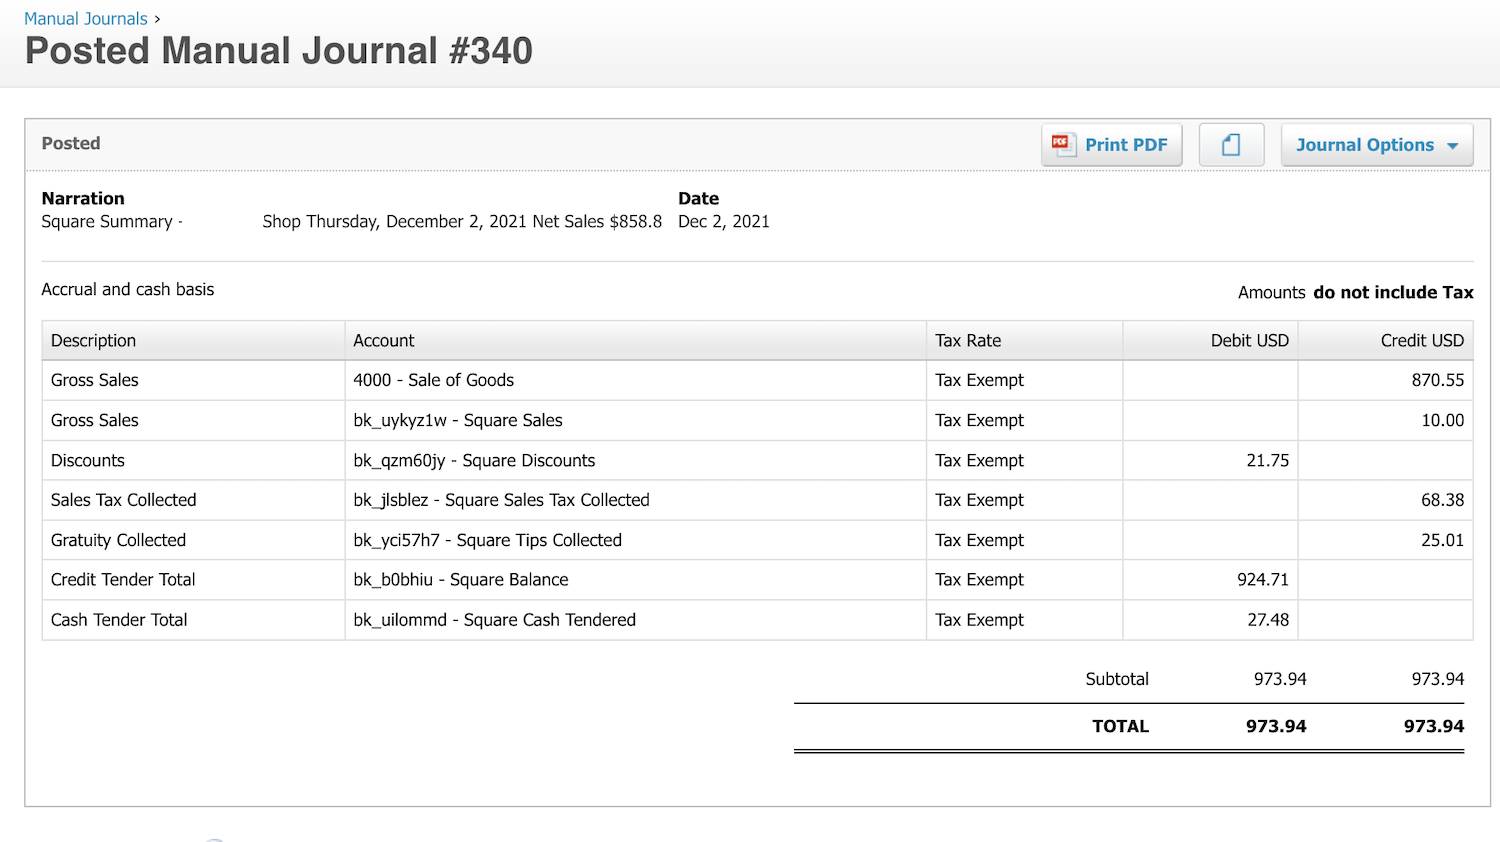 Screenshot showing the manual journal entry in Xero